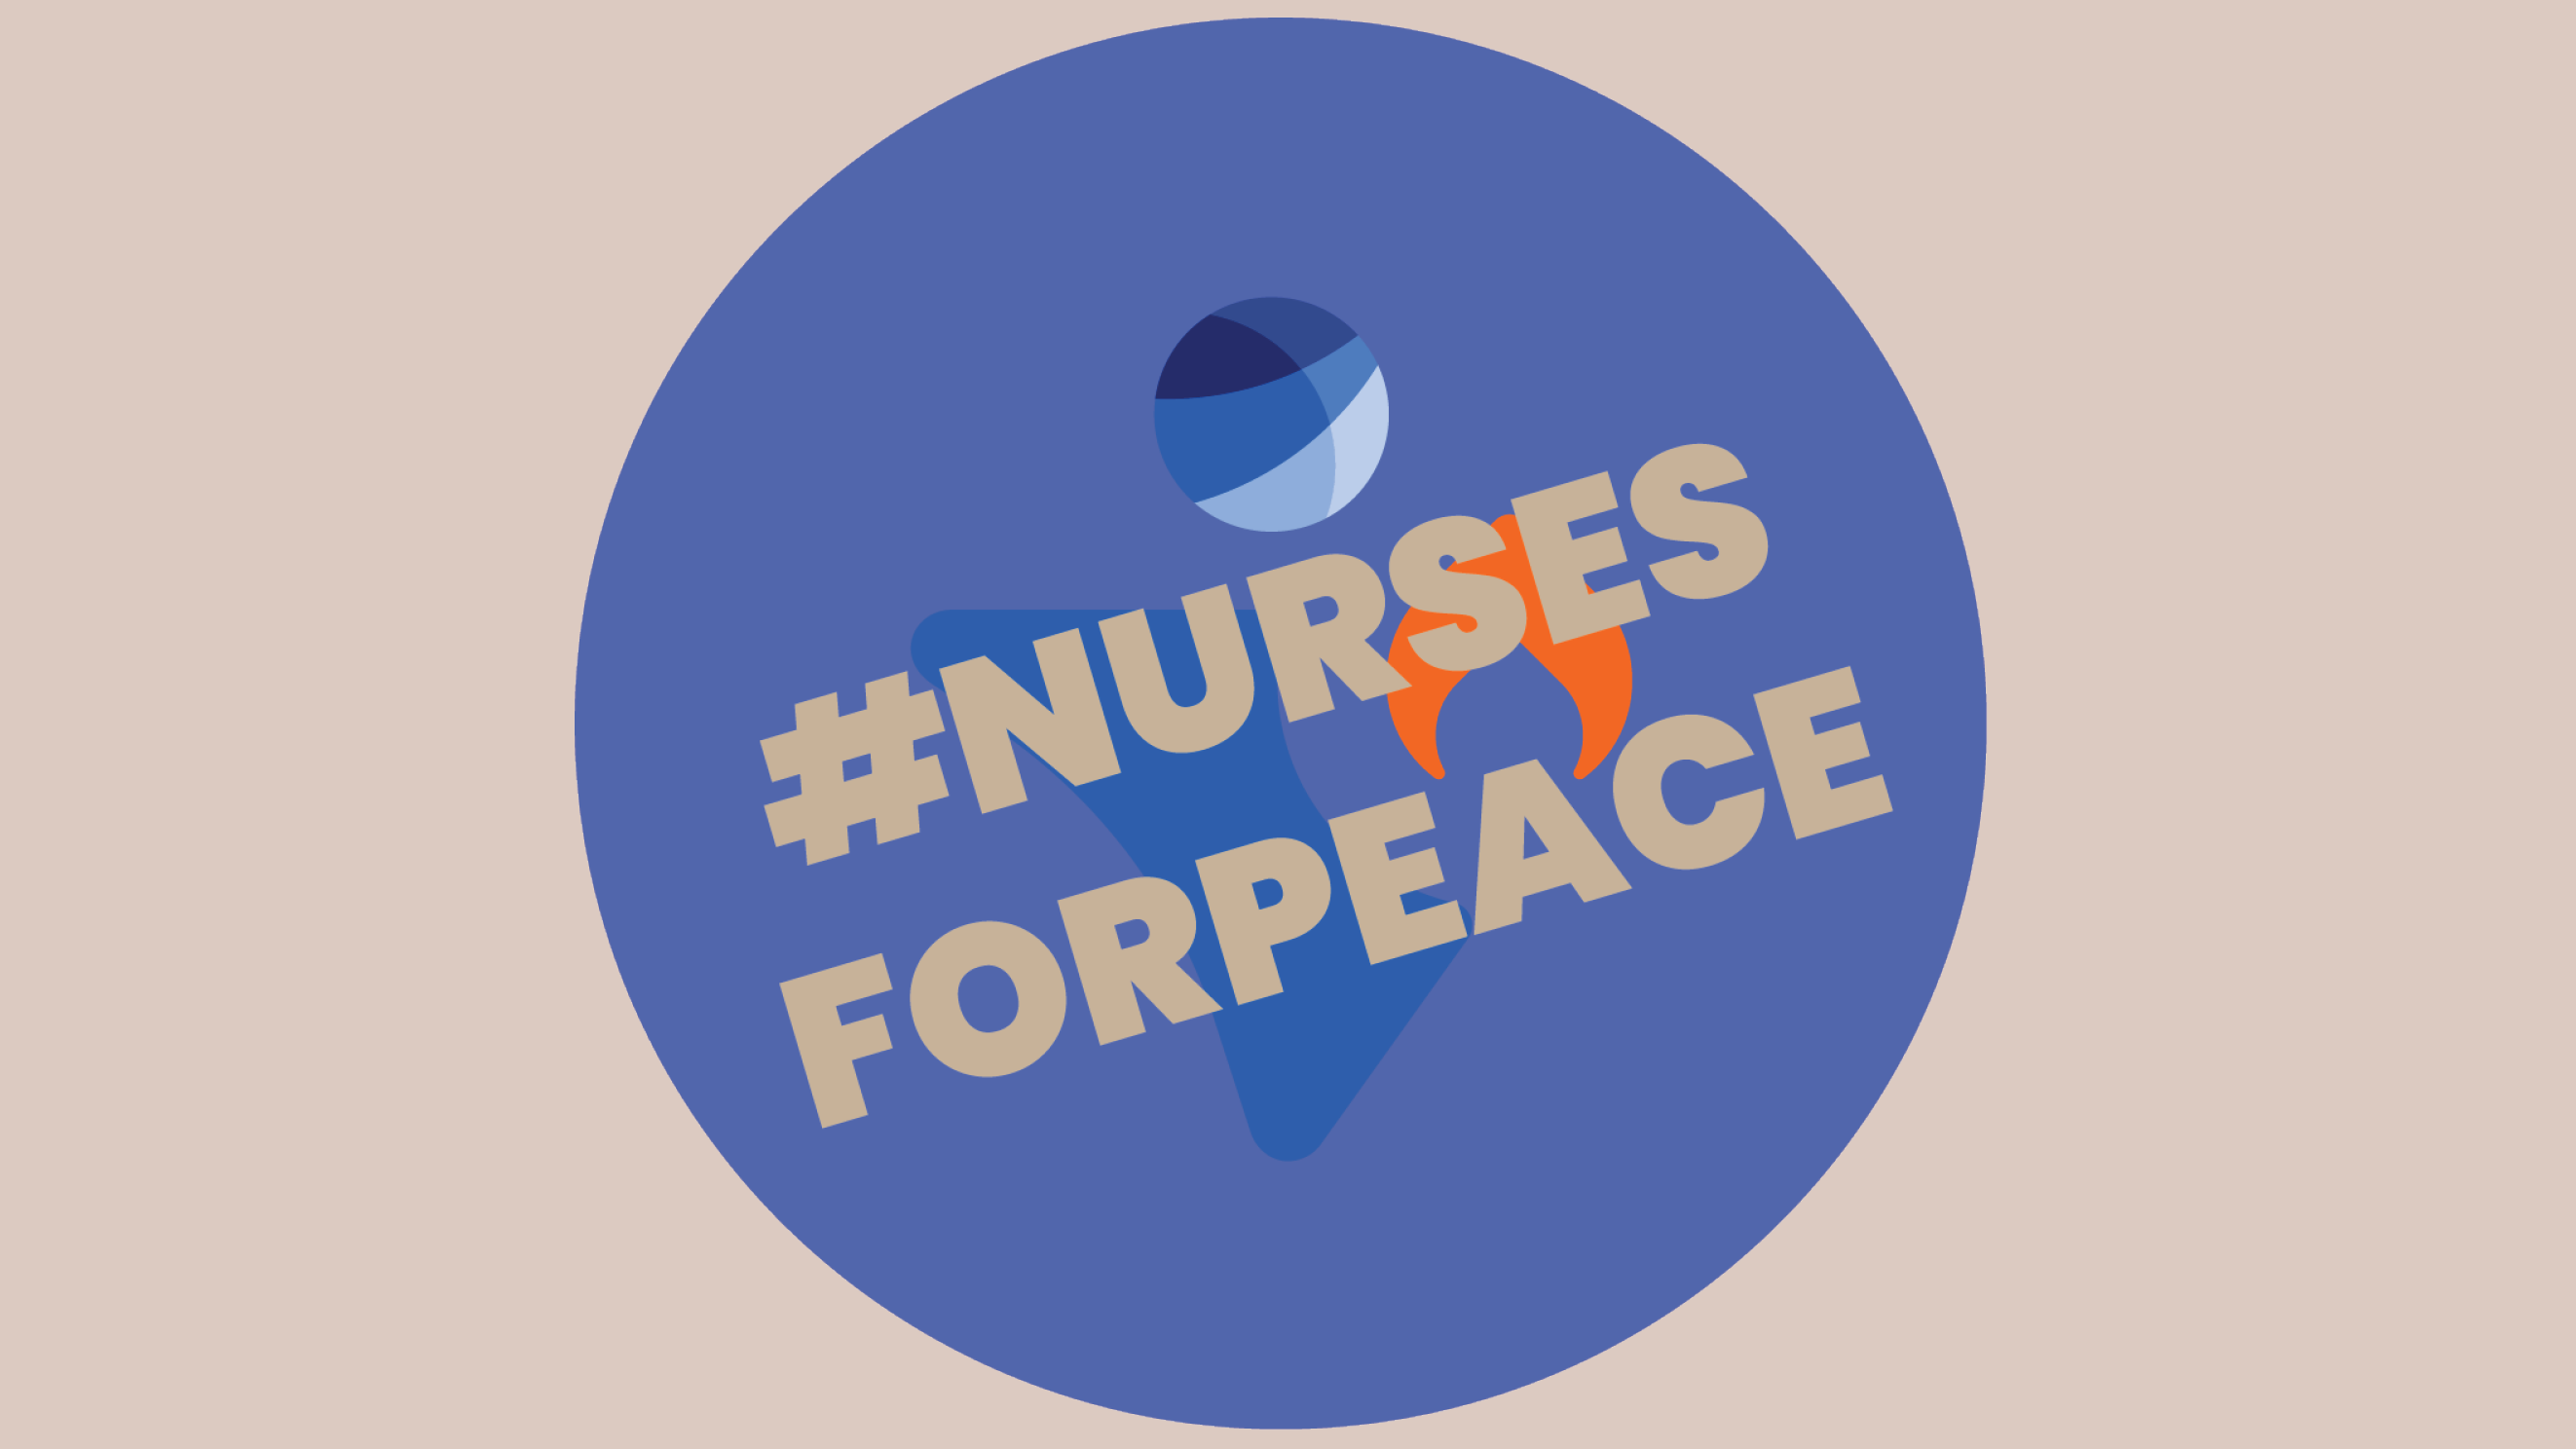 #NursesforPeace